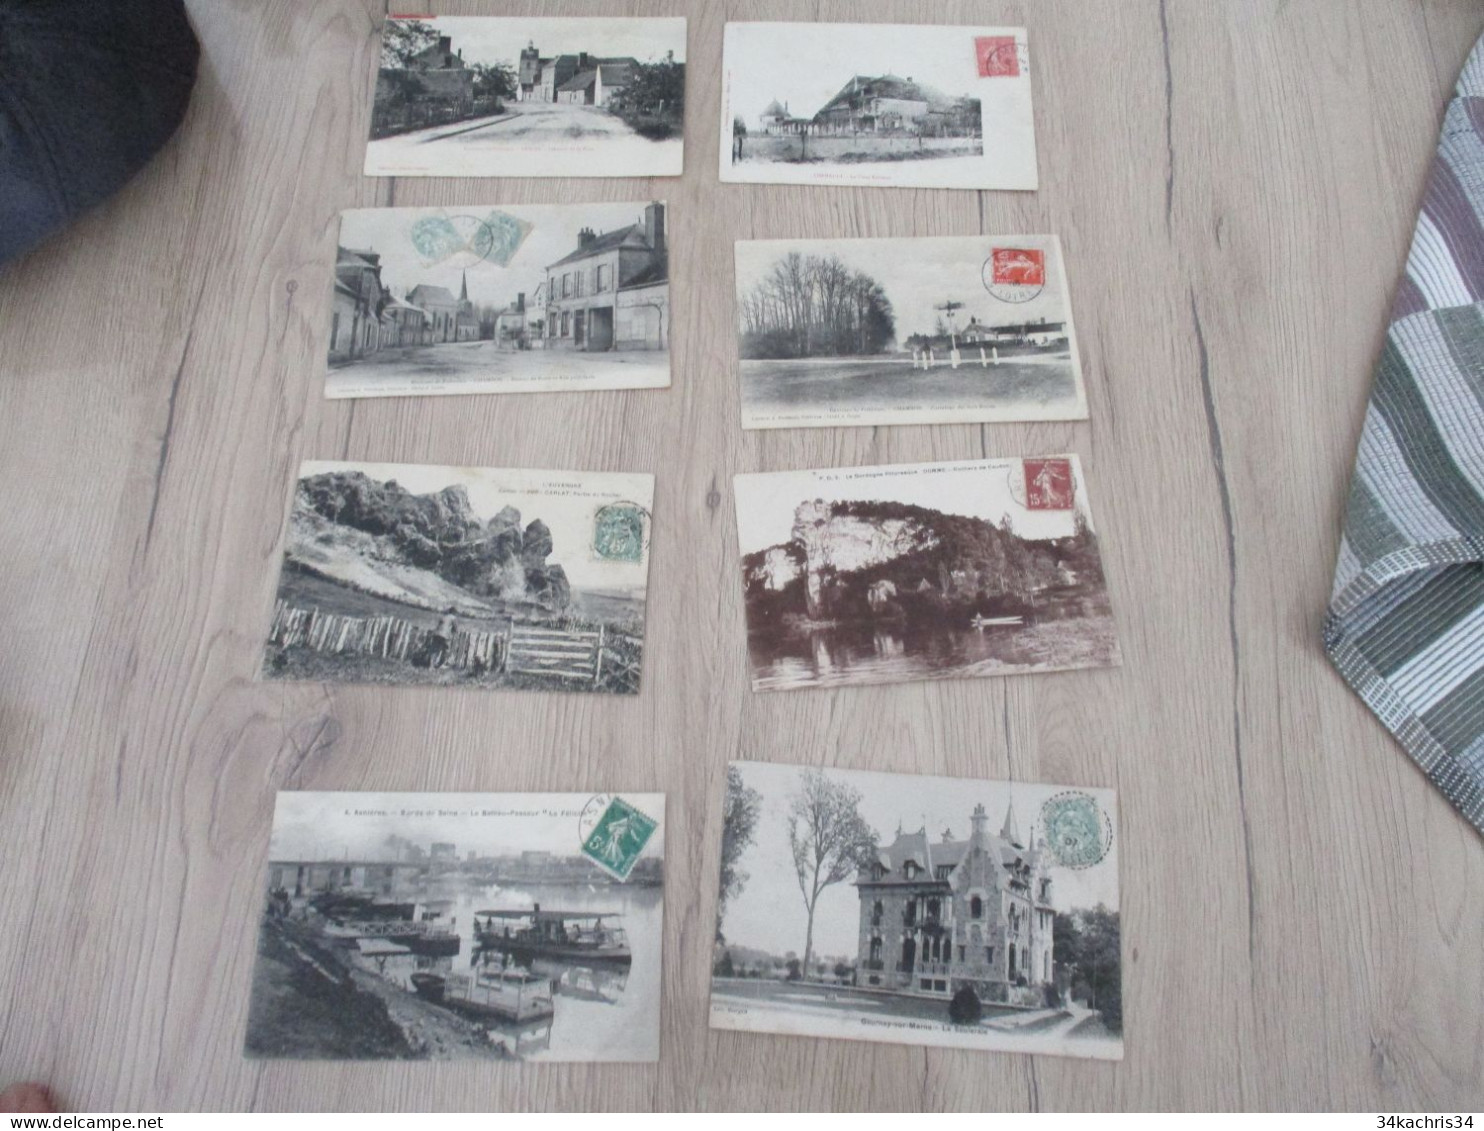 N°2 Déstockage Collection énorme CPA Cartes Postales 100 CPA Différentes Petites Et Moyennes Cartes Pas De Drouille - 100 - 499 Postcards